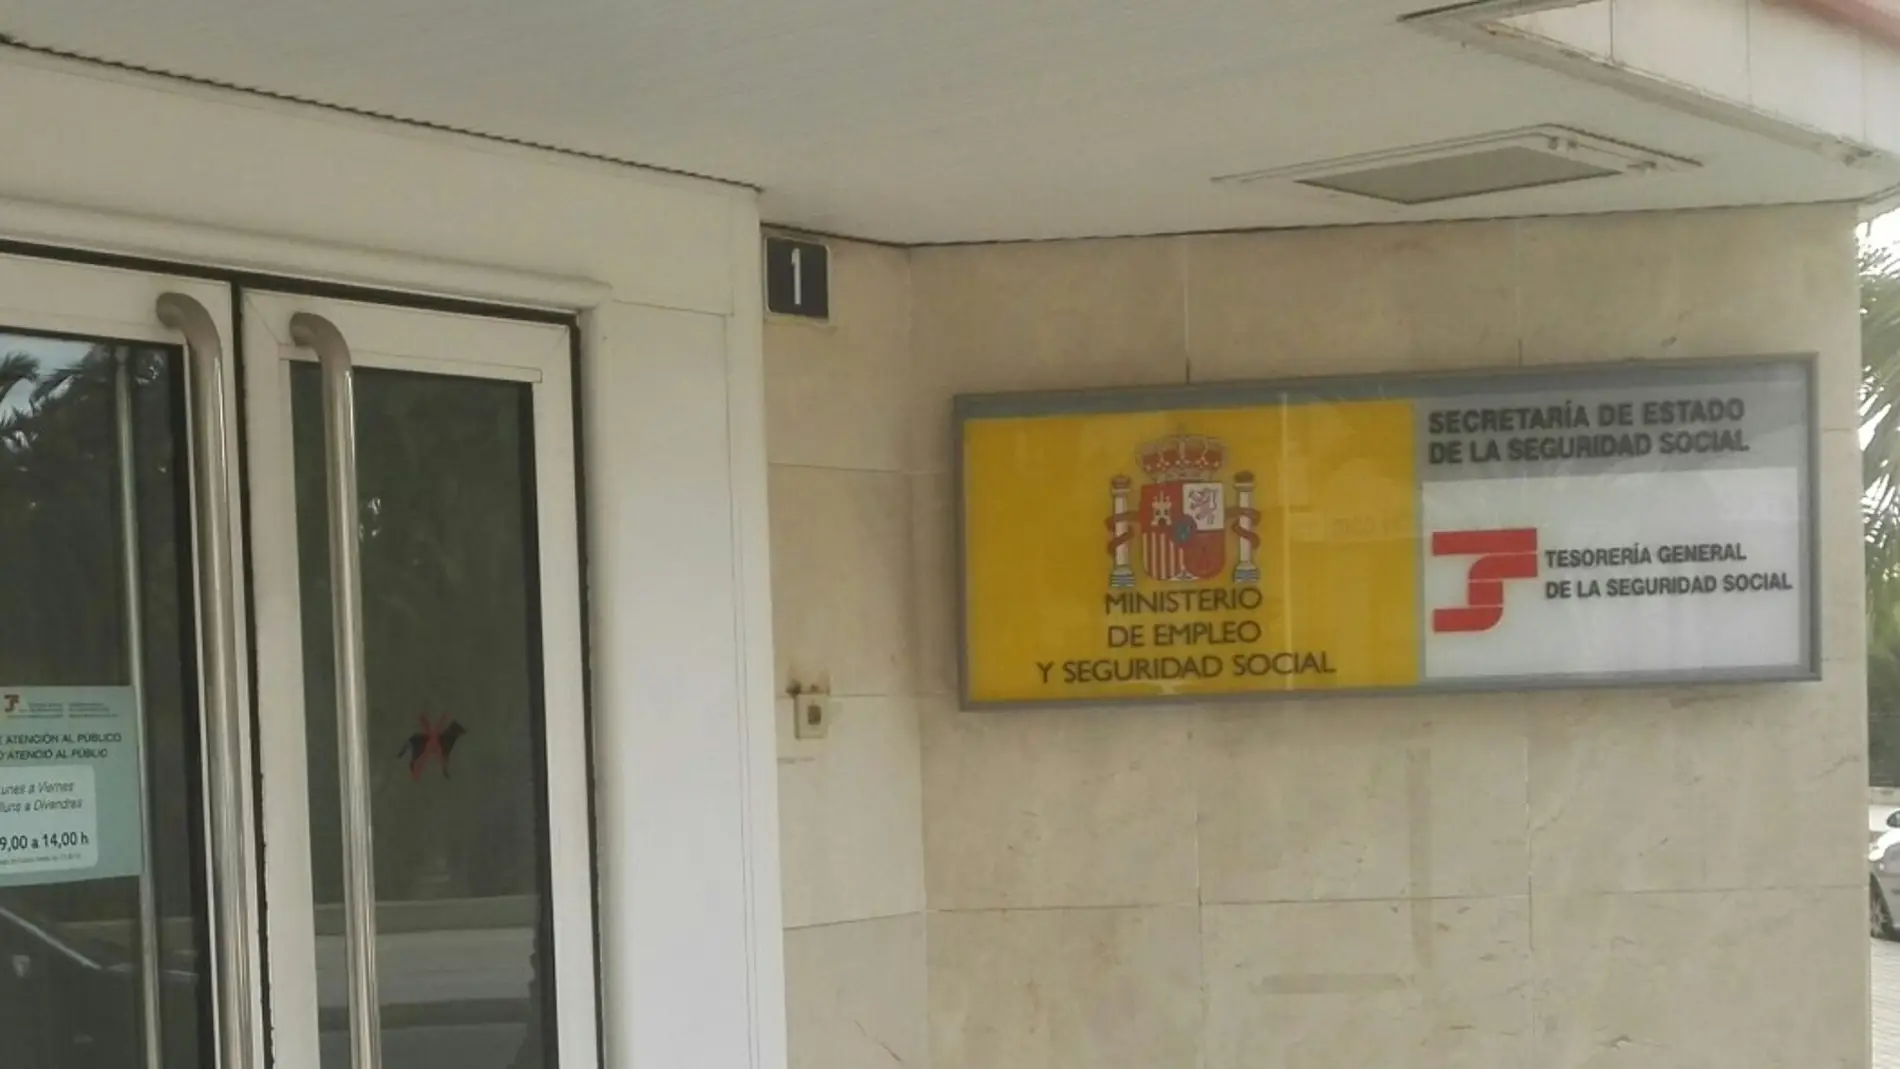 Tesoreria General de la Seguridad Social en Elche. 